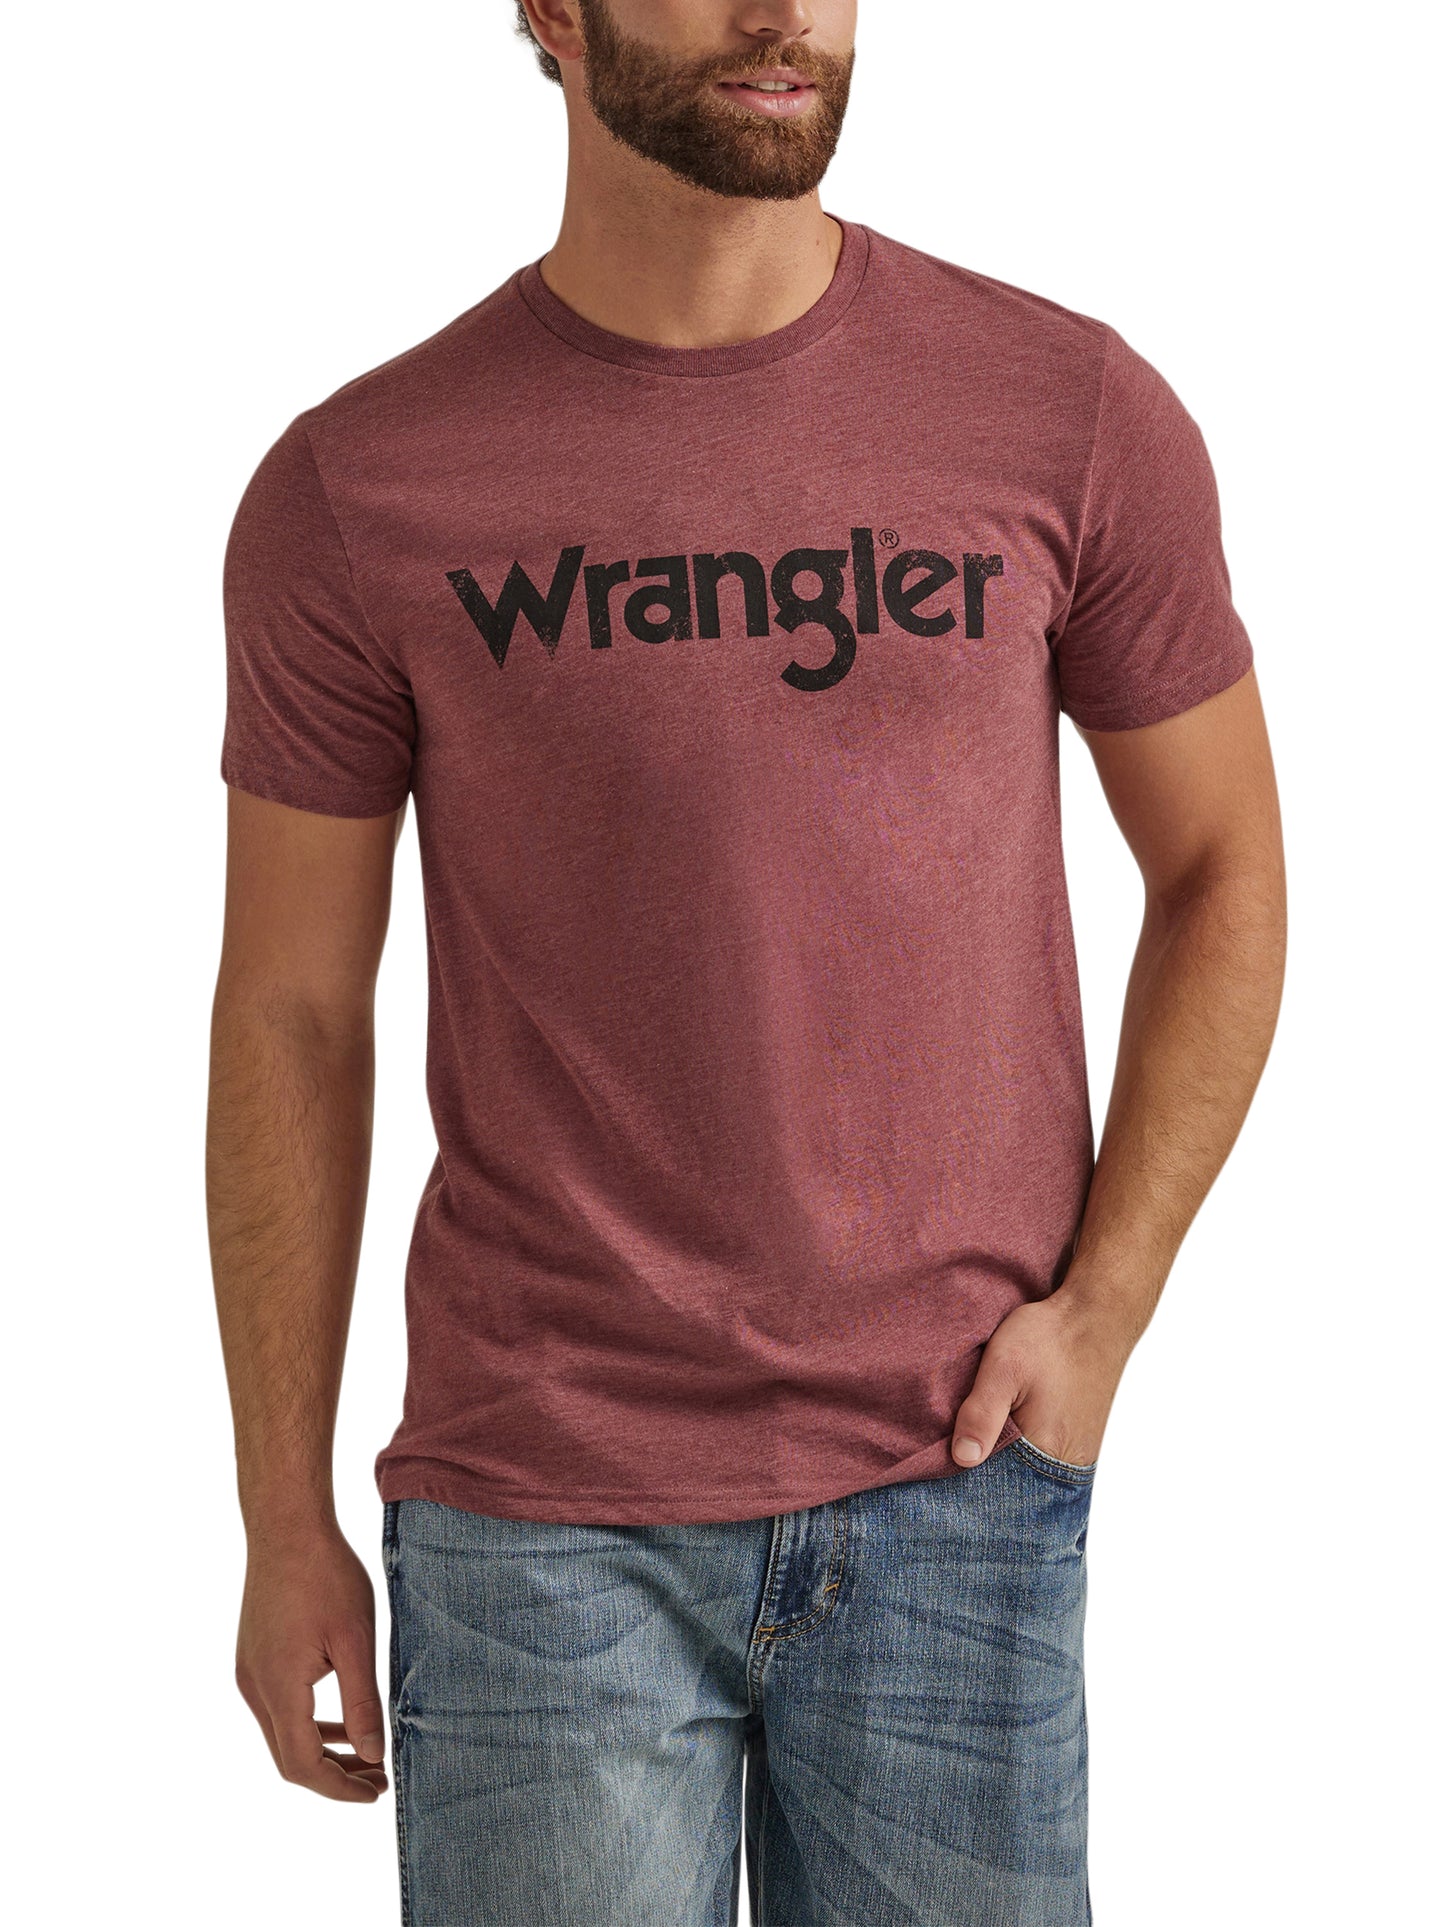 Wrangler Men's Burgandy T-Shirt